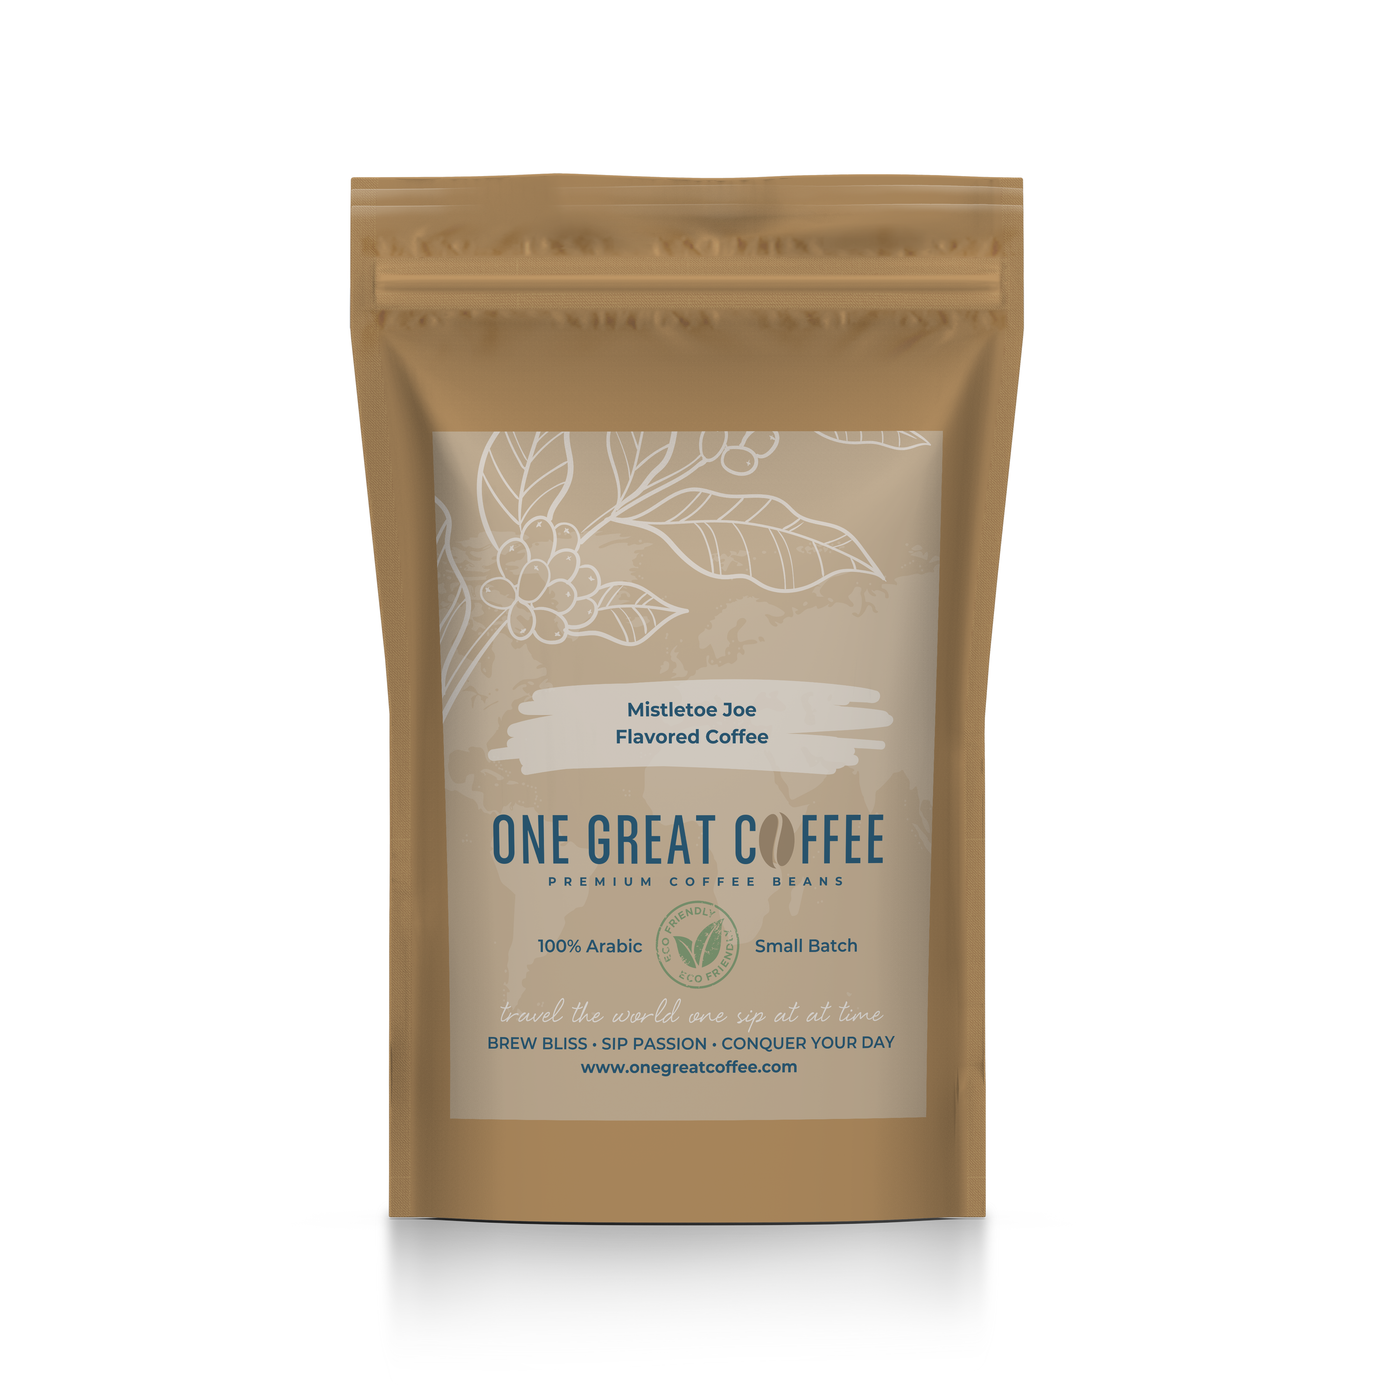 Mistletoe Joe Flavored Coffee